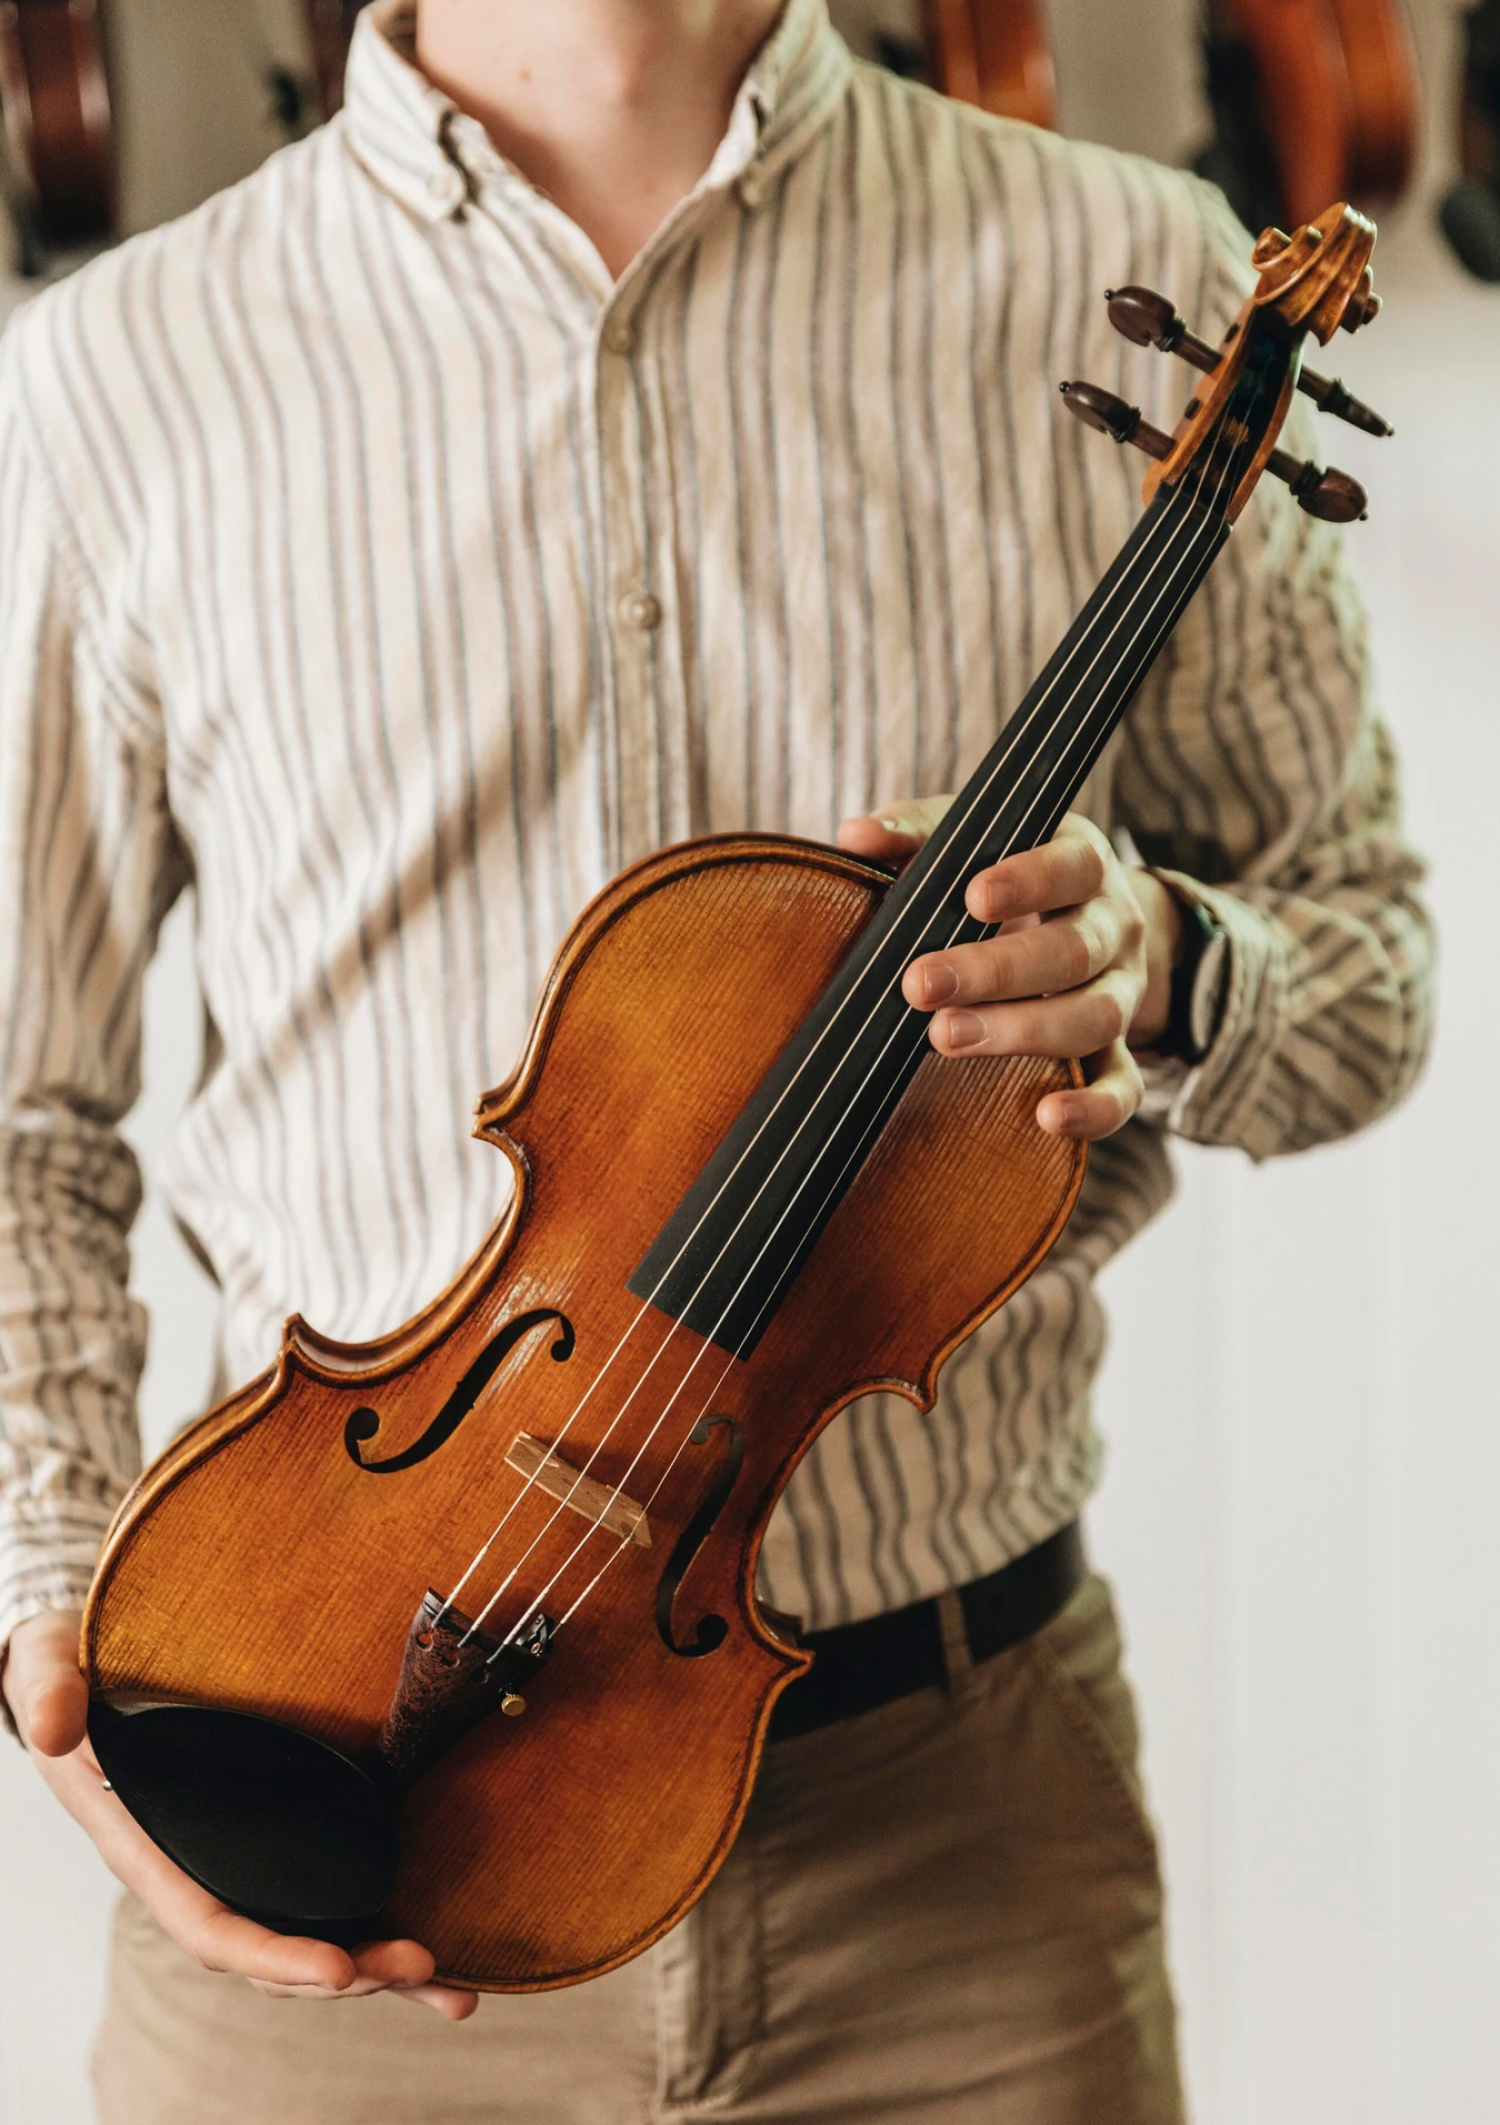 Violin: Helmut Illner, German Master Luthier, A-Model Instrument. 1500x2130 HD Background.